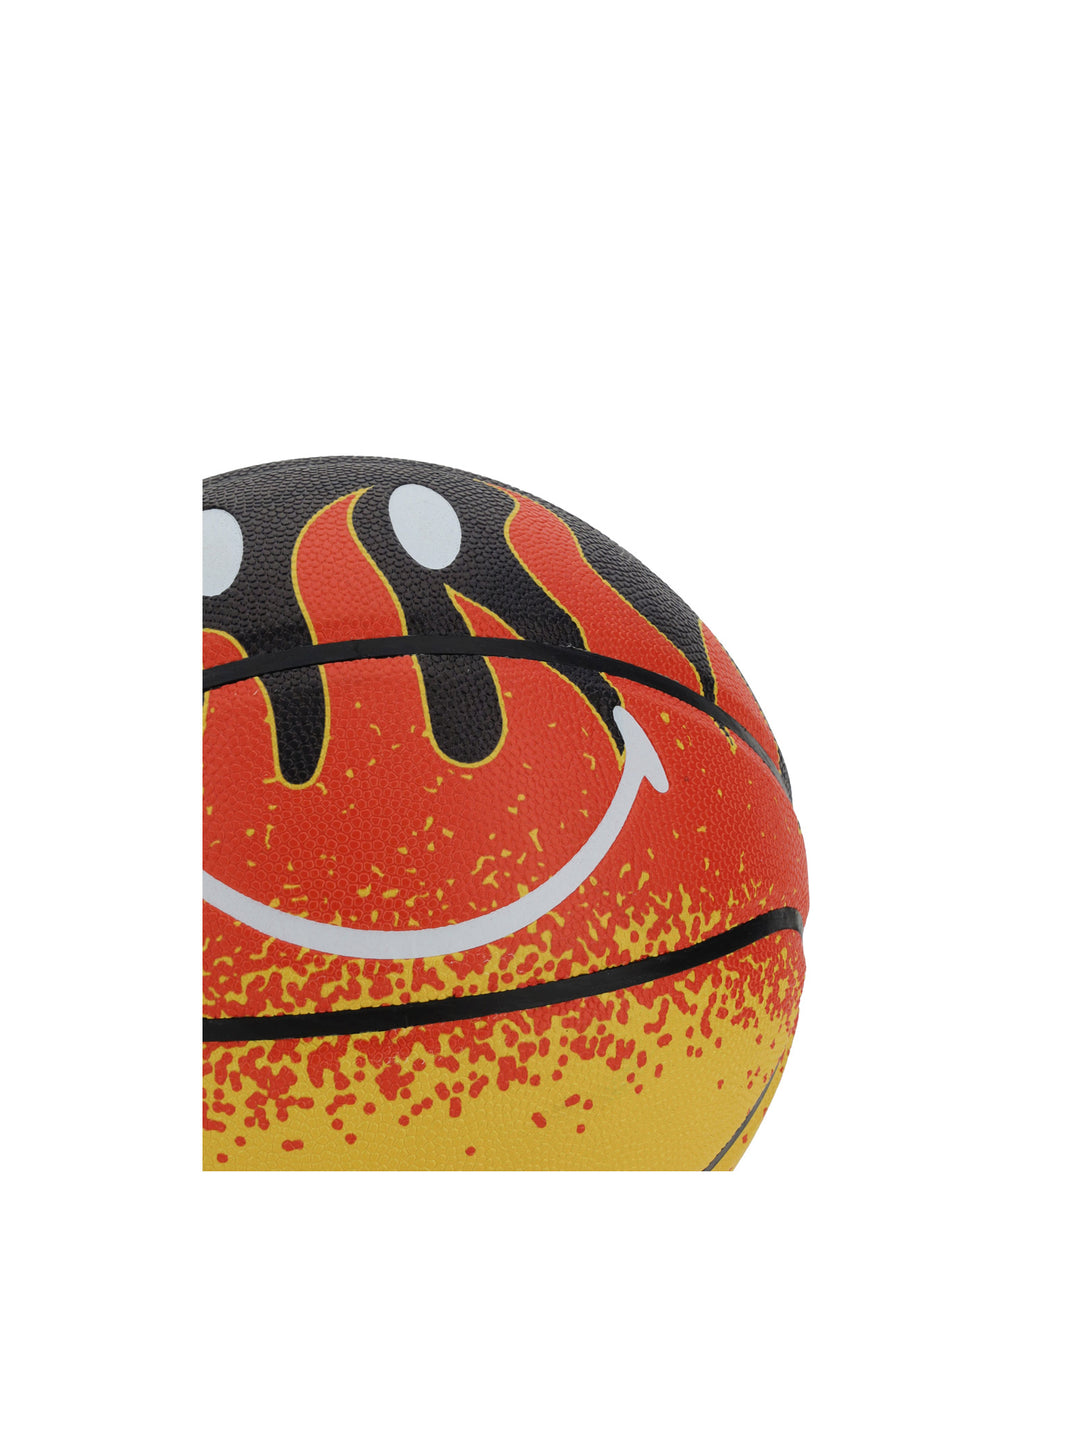 Pallone da Basket Flame